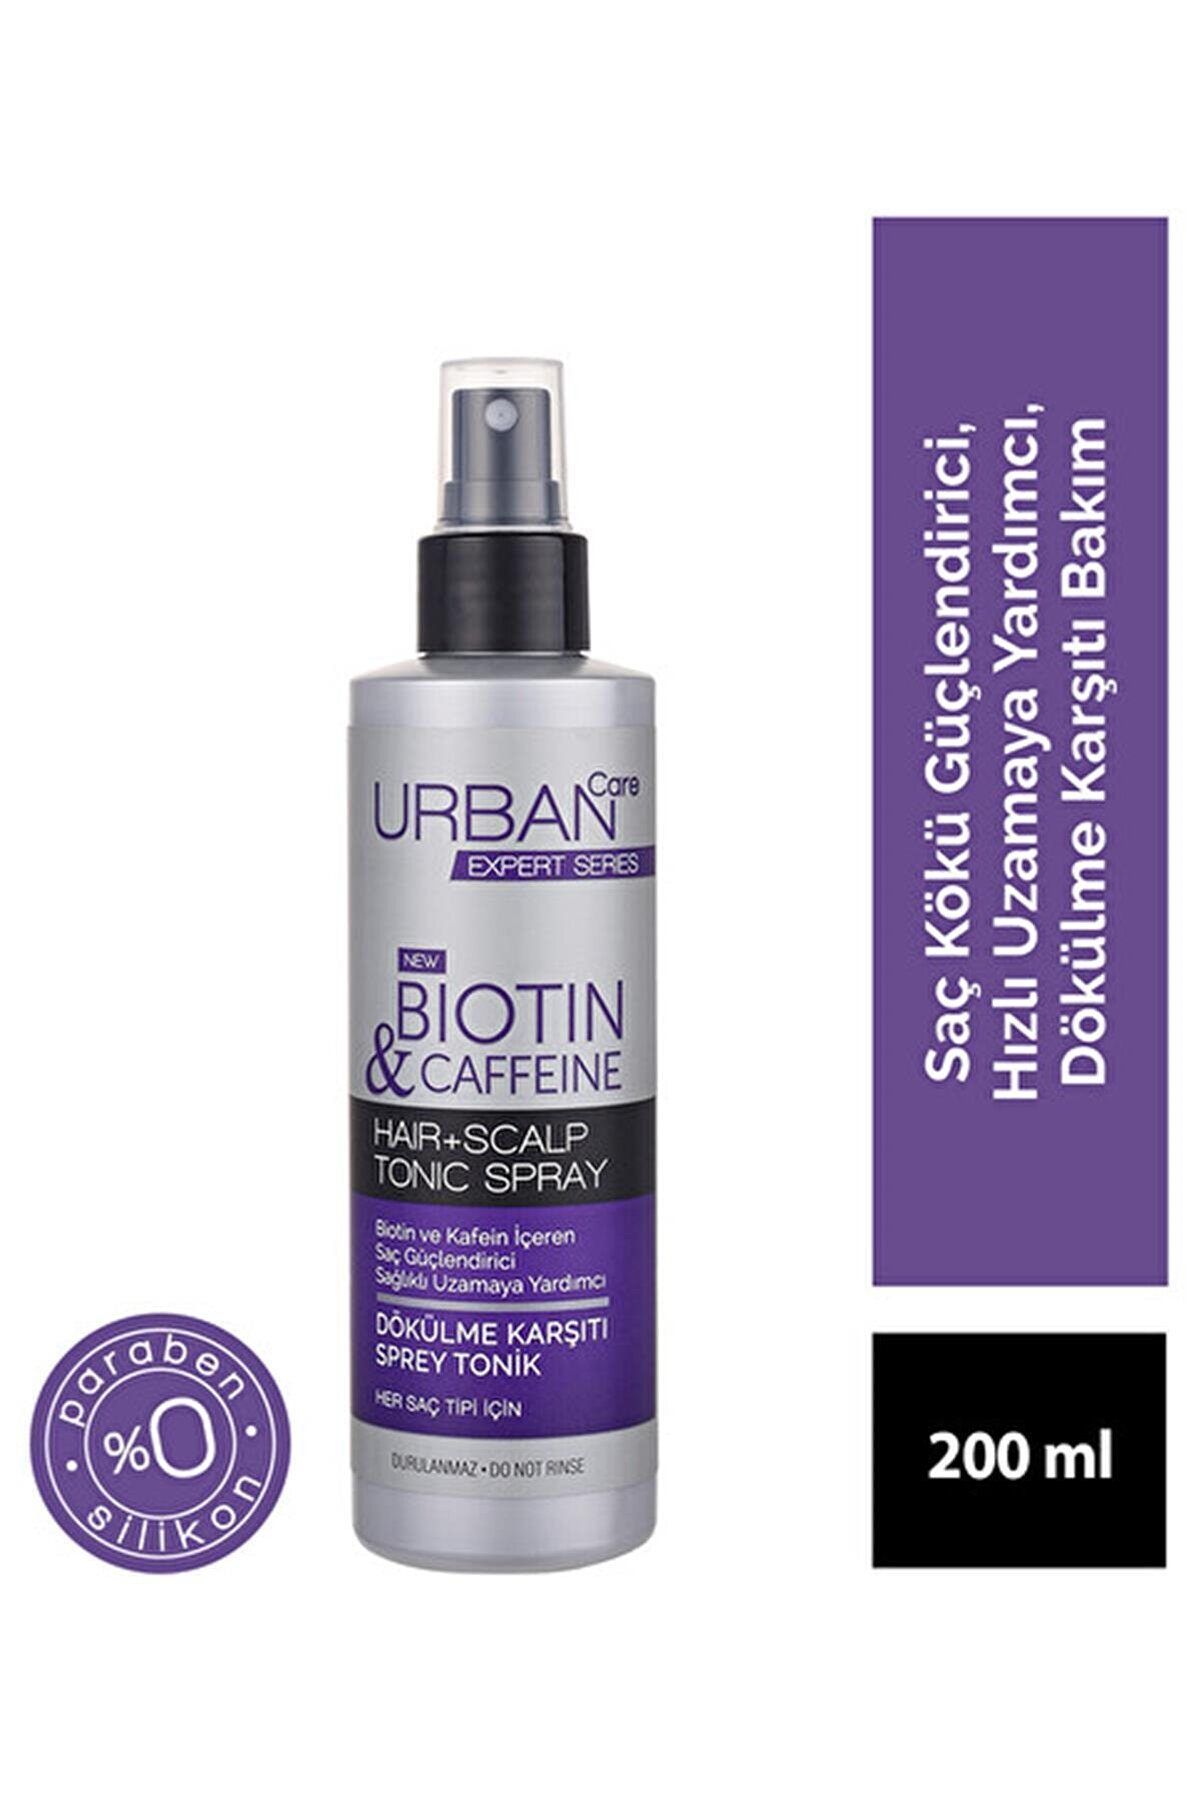 Urban Care Marka: Expert Biotin & Caffeine Tonik Sprey 200 Ml Kategori: Saç Boyası